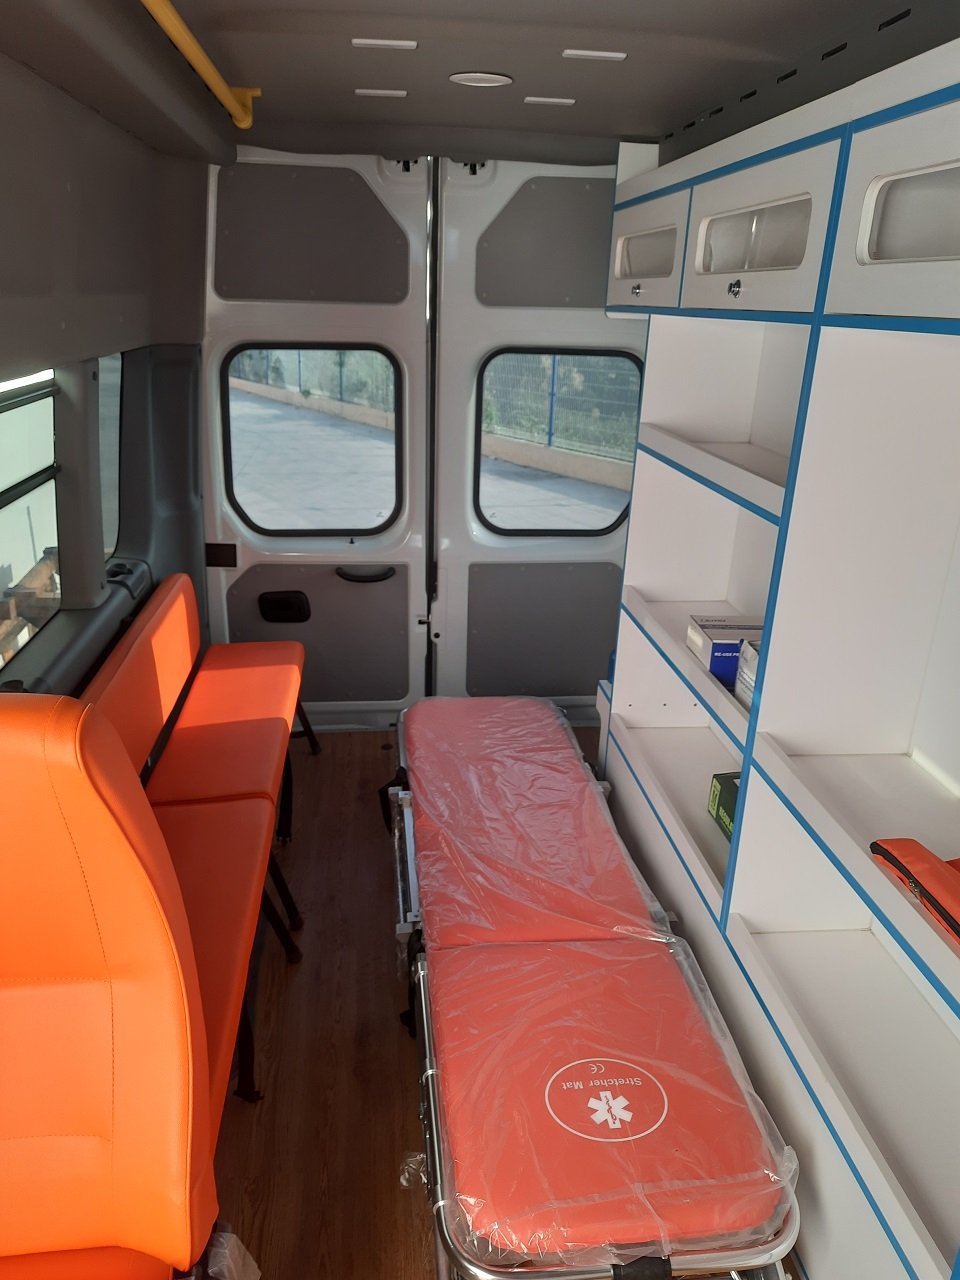 Gaz Gazelle Next Van 2020 - Xe cứu thương ambulance nhập khẩu nguyên chiếc màu trắng sẵn xe giao ngay tại Hyundai Bắc Việt, Long Biên, Hà Nội